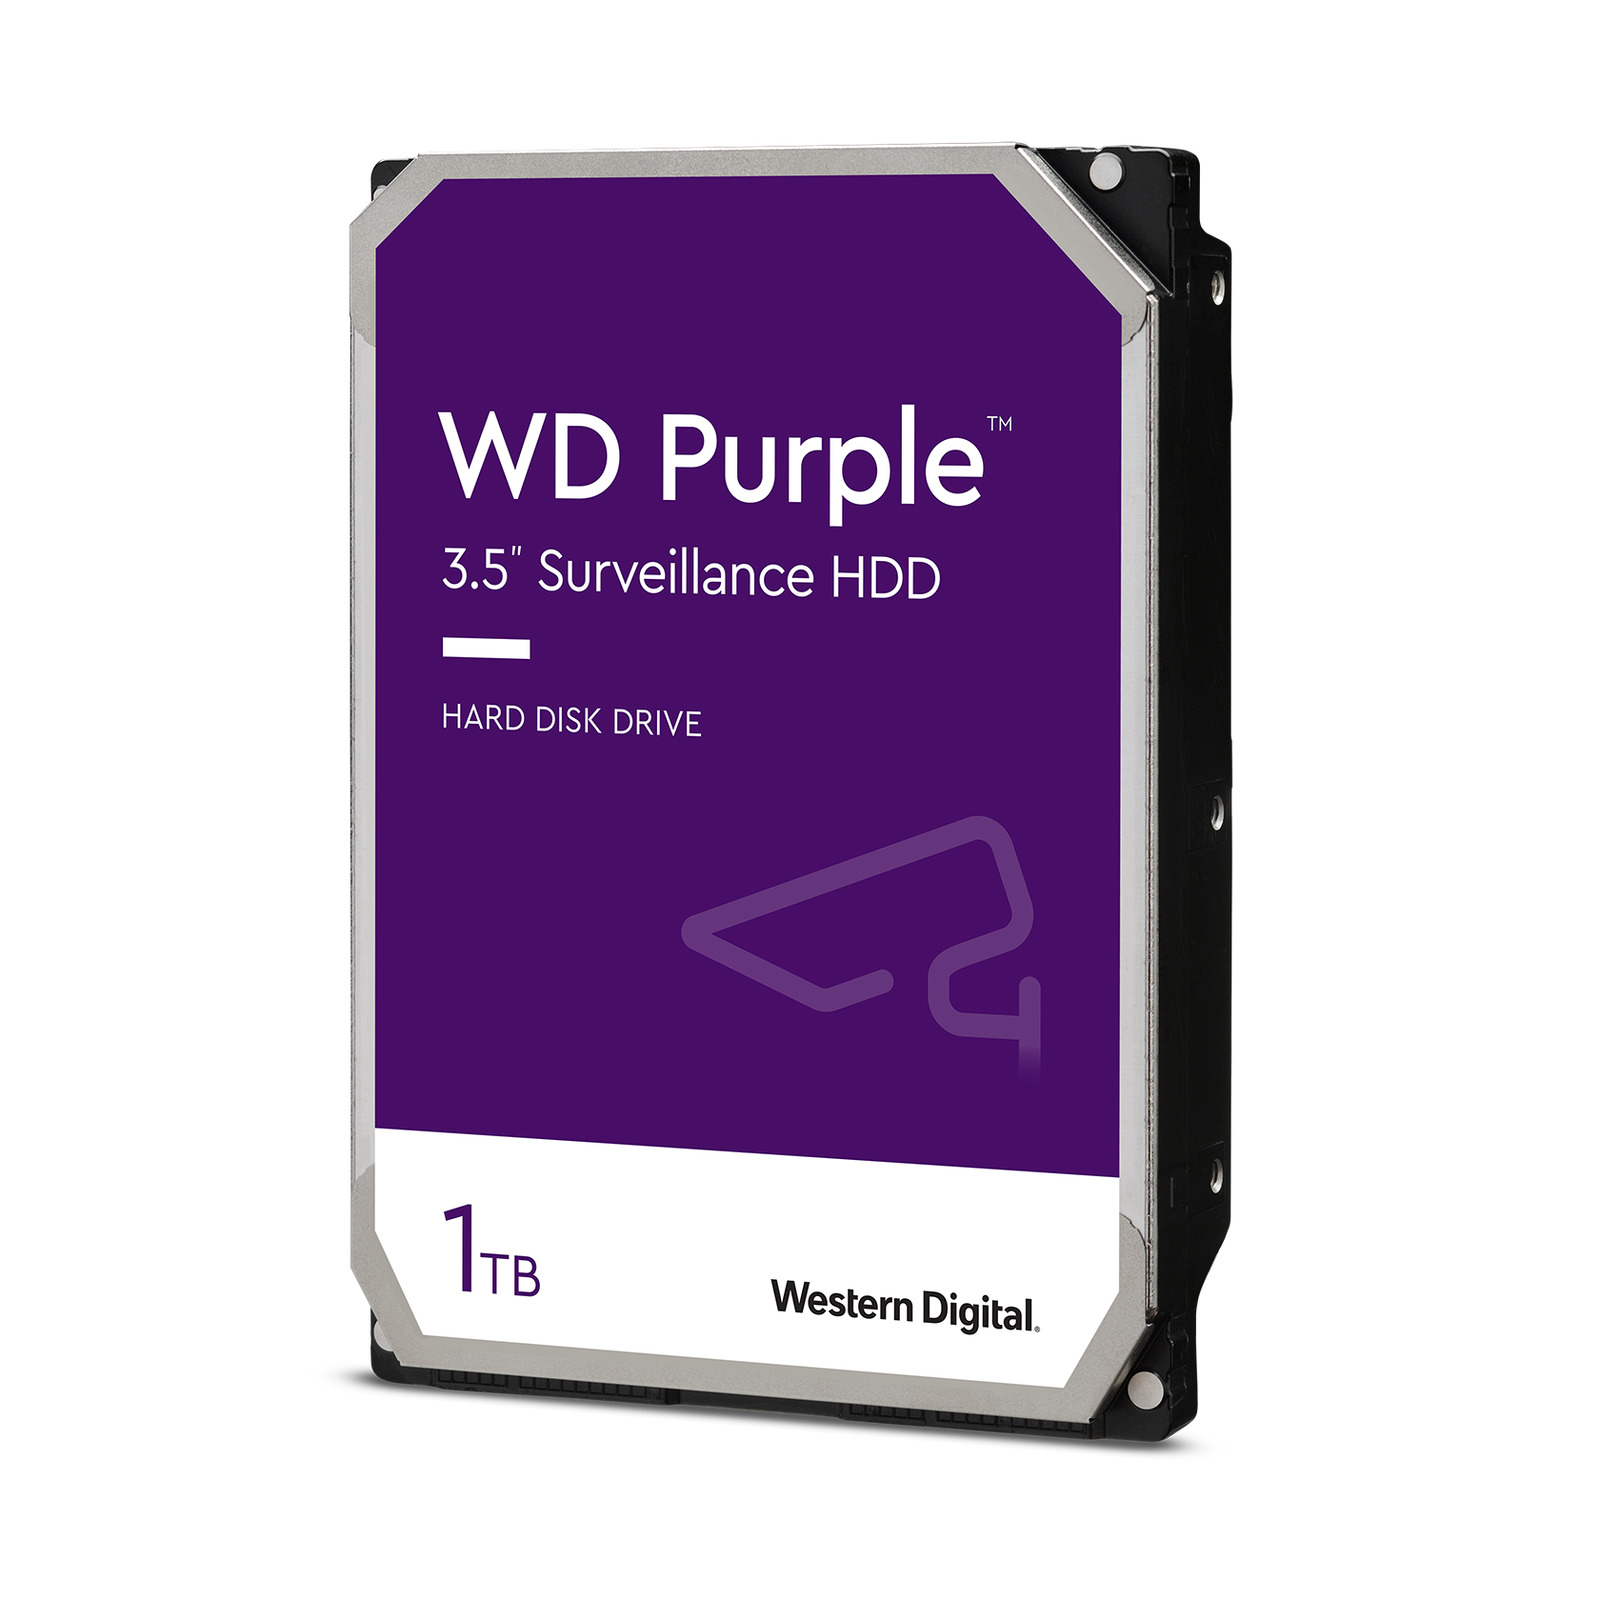 Western Digital 1TB WD Purple Surveillance HDD, Internal Hard Drive - WD10PURZ